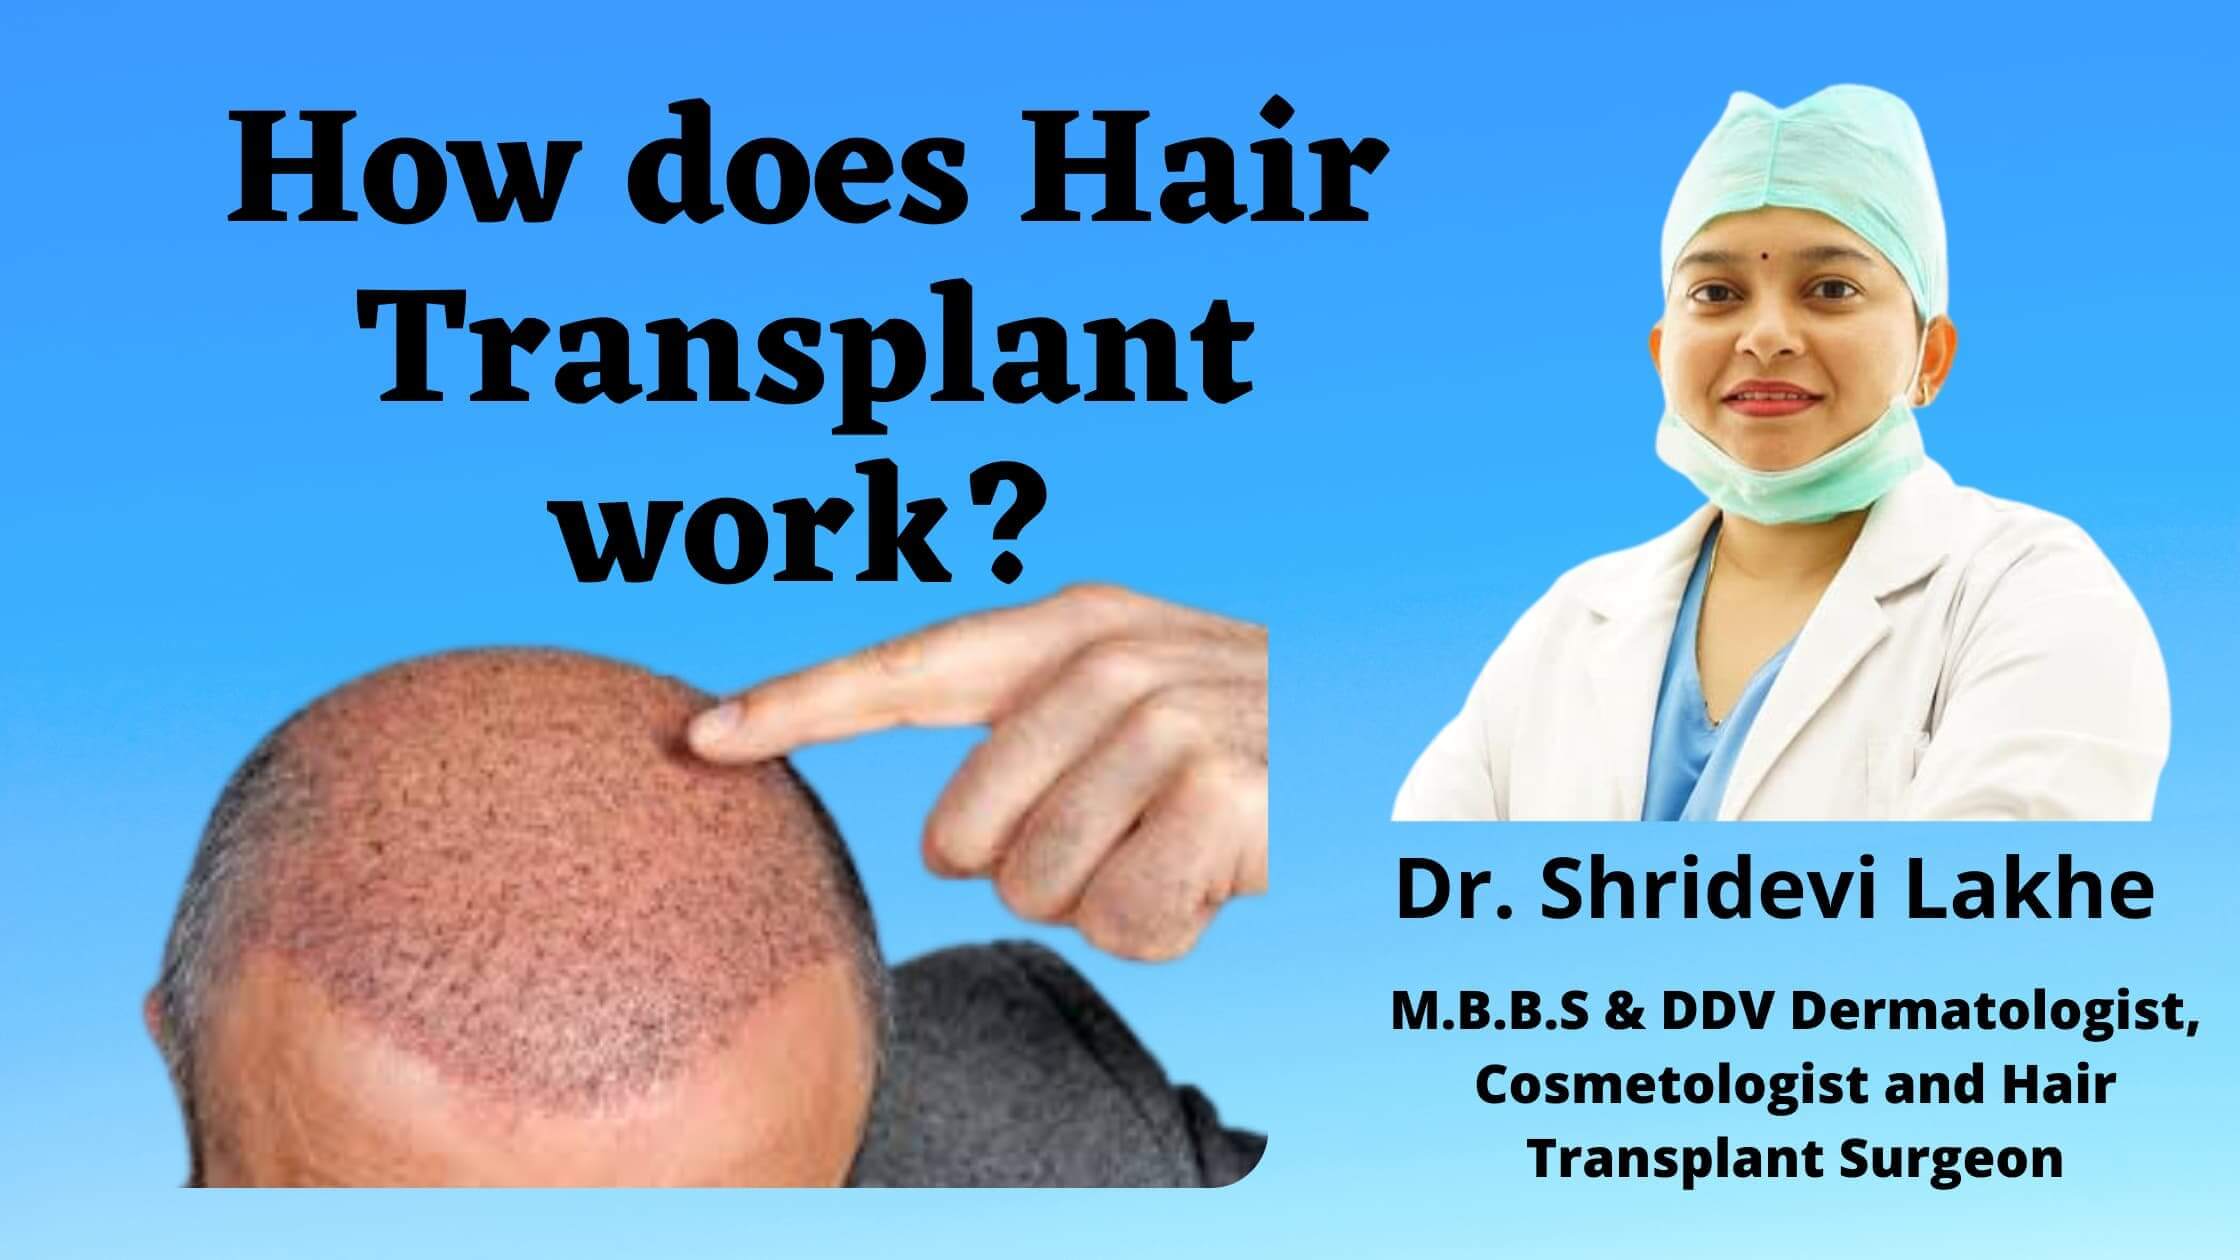 dr shridevi lakhe a best hair transplant doctor explaining how hair transplant works